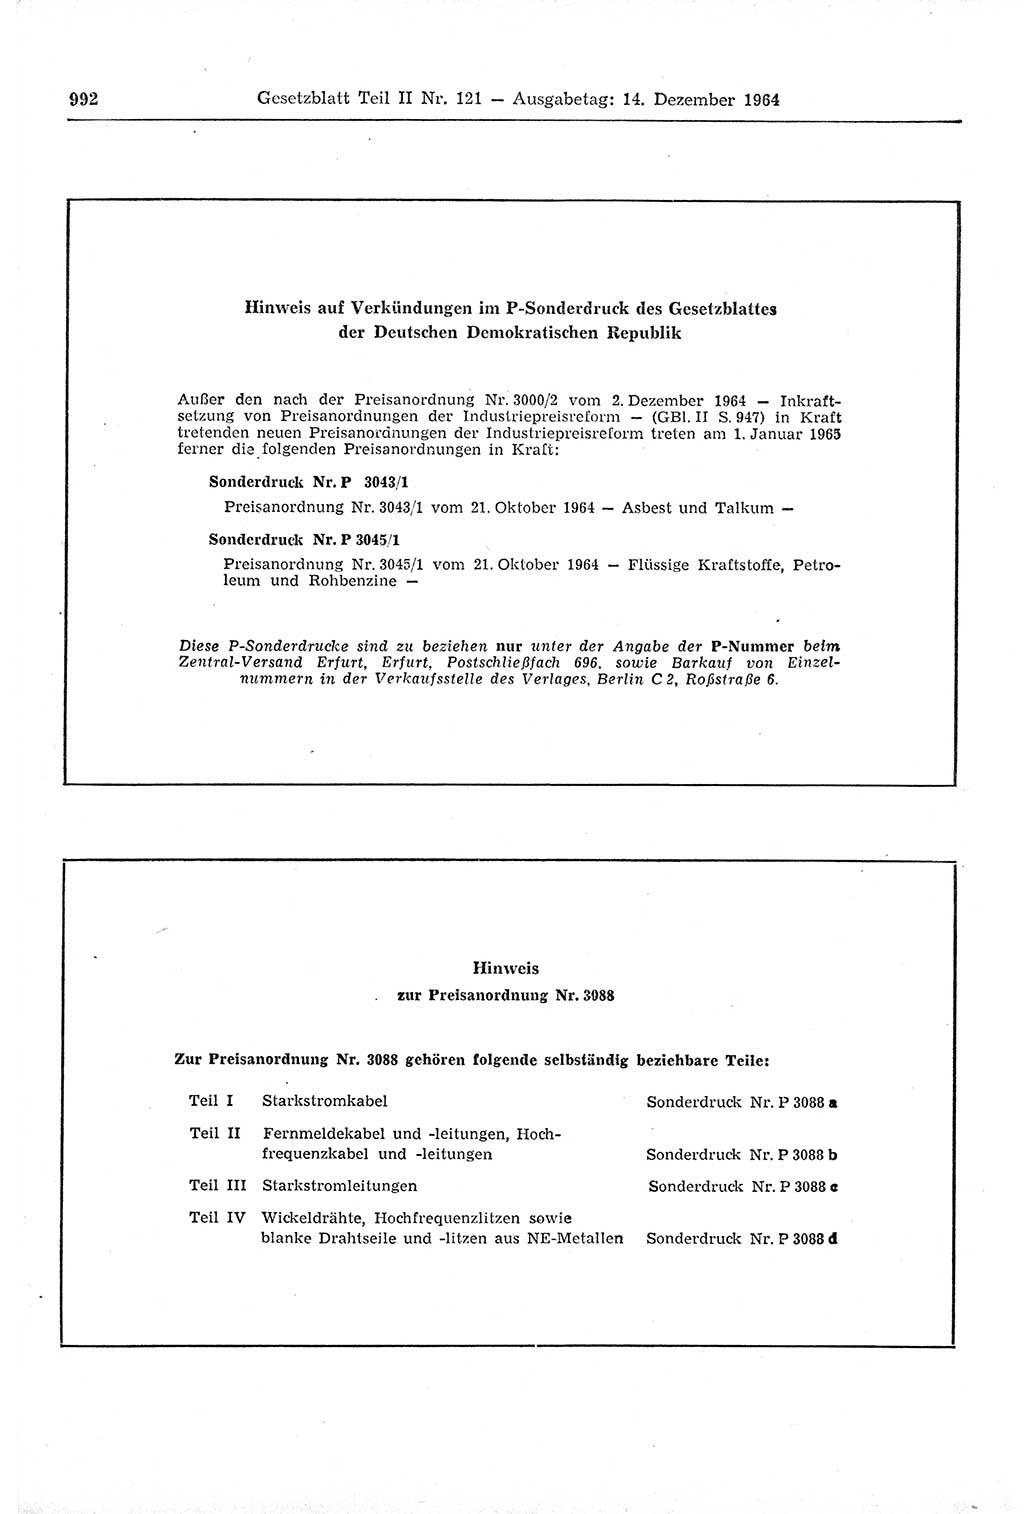 Gesetzblatt (GBl.) der Deutschen Demokratischen Republik (DDR) Teil ⅠⅠ 1964, Seite 992 (GBl. DDR ⅠⅠ 1964, S. 992)